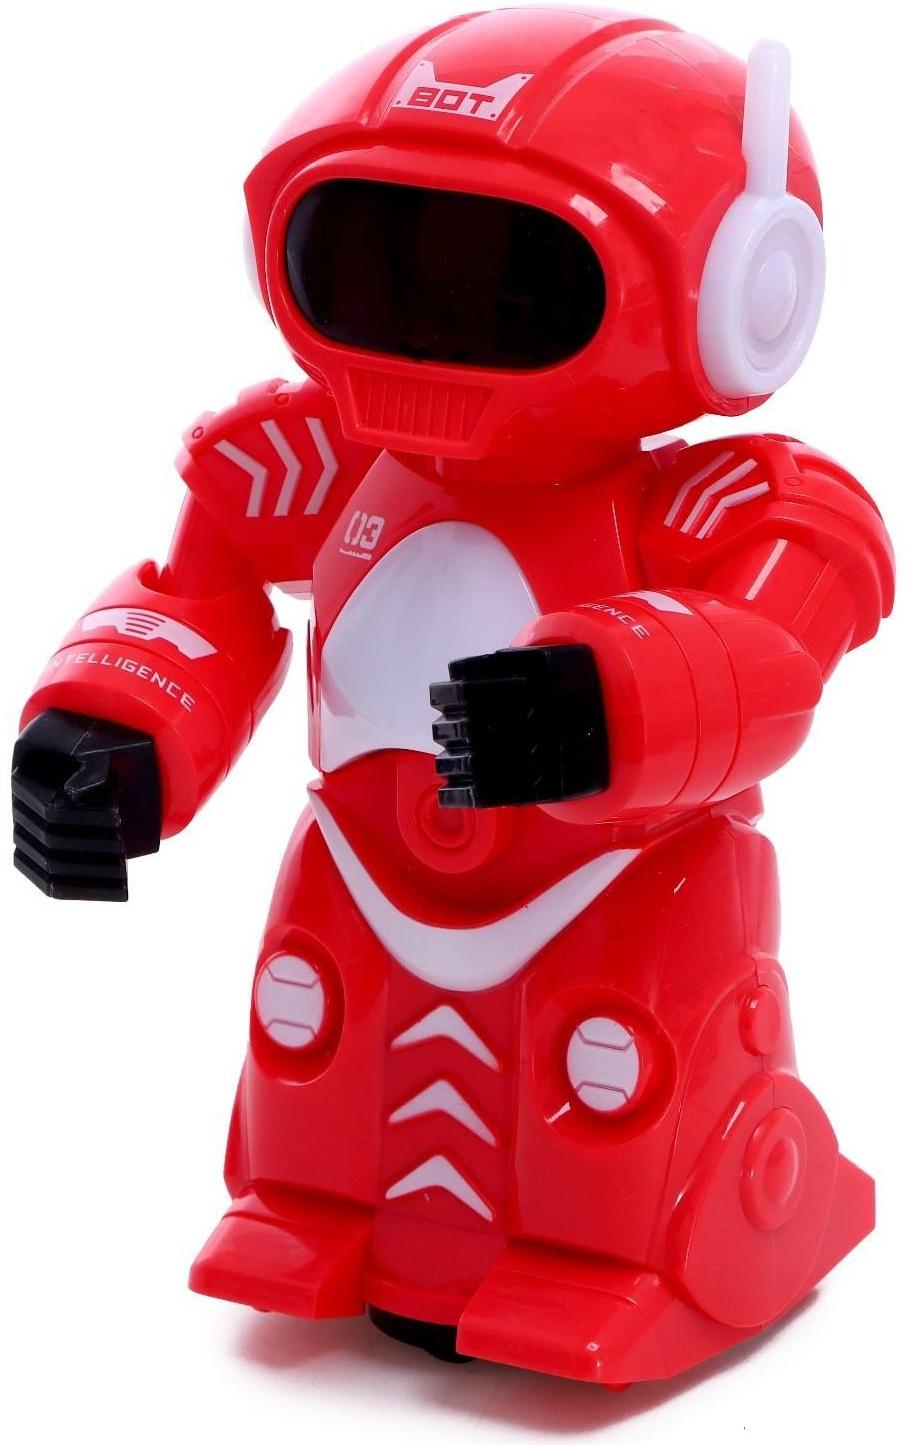 Робот-пришелец «Бласт», русское озвучивание, световые эффекты, цвета МИКС